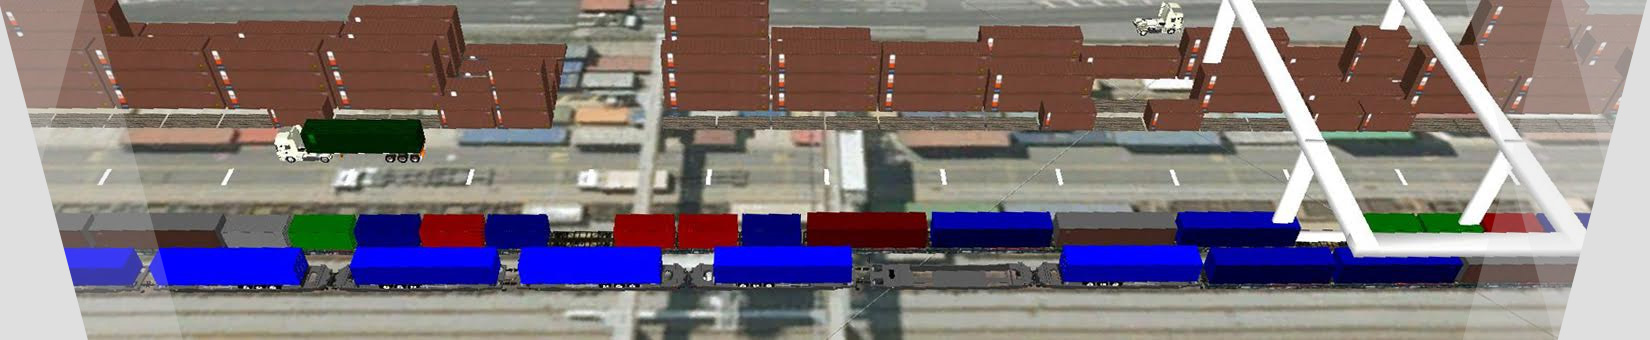 Screenshot optihubs Containerterminal 1 WienCont